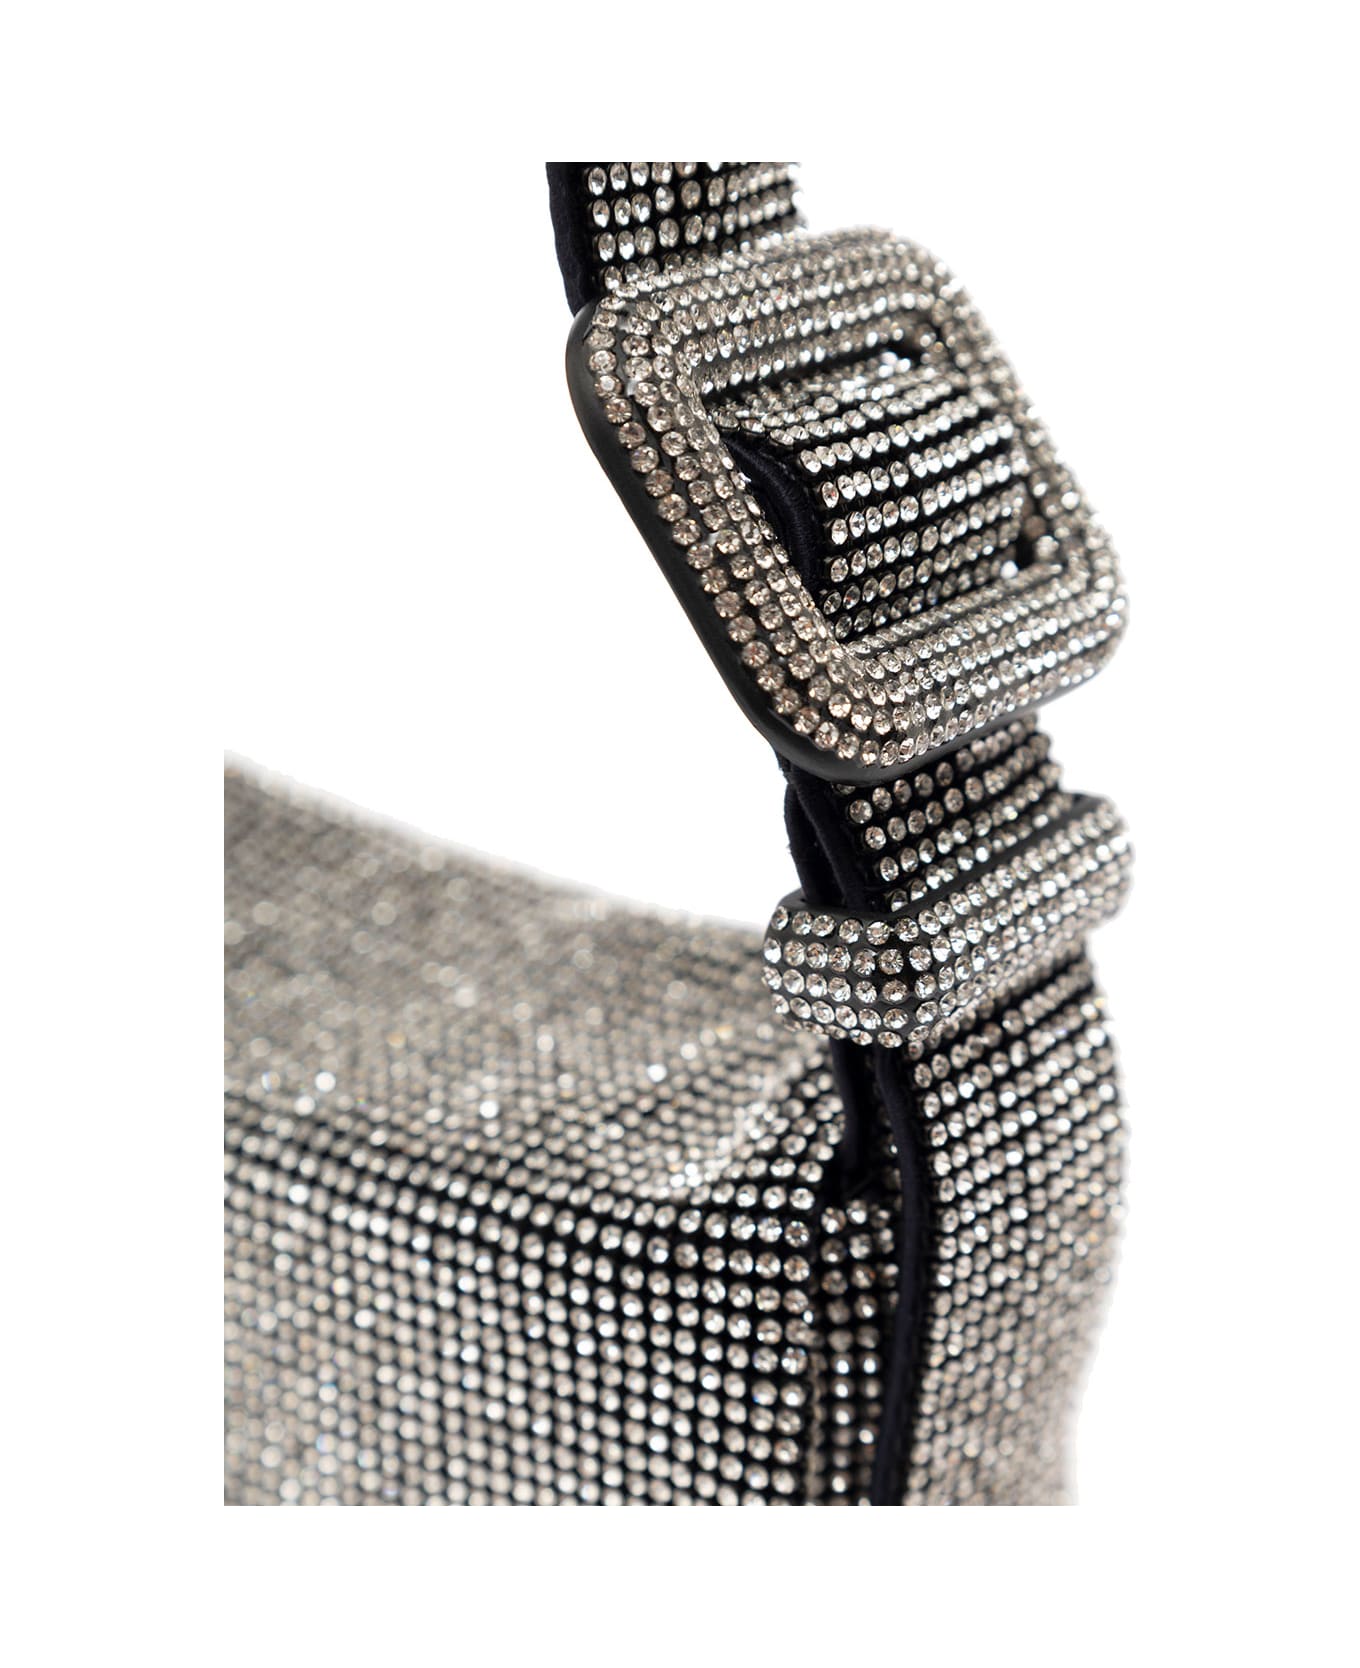 Benedetta Bruzziches 'vitty La Mignon' Silver Shoulder Bag With Gem Embellishment In Rhinestone Mesh Woman - Metallic ショルダーバッグ